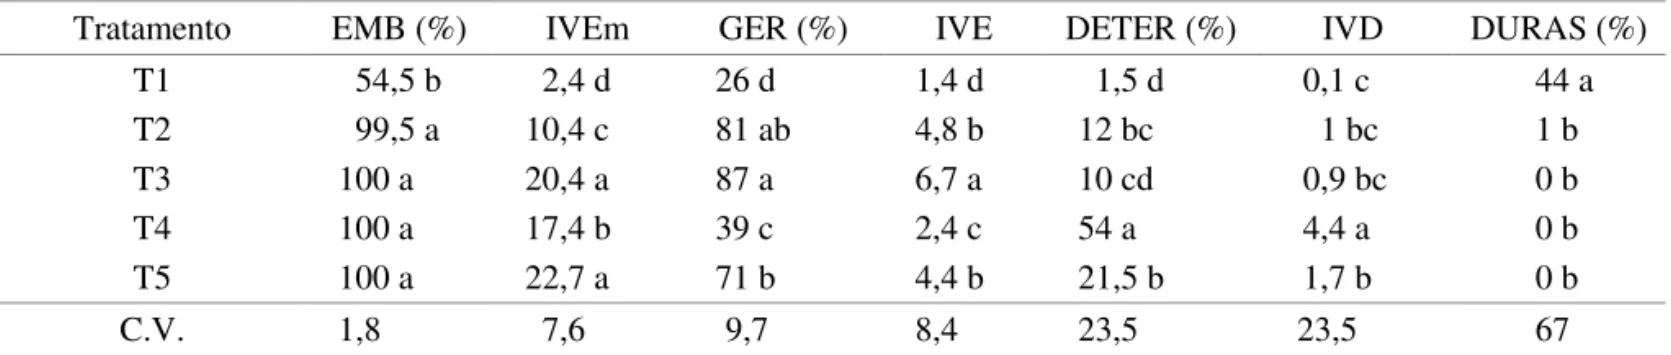 taBeLa  1.  Valores  médios  de  sementes  embebidas  (emB,  %),  índice  de  velocidade  de  embebição  (iVem),  porcentagem  de  germinação  (Ger),  índice  velocidade  de  emergência  (iVe),  sementes  deterioradas  (deter,  %),  índice  de  deterioraçã